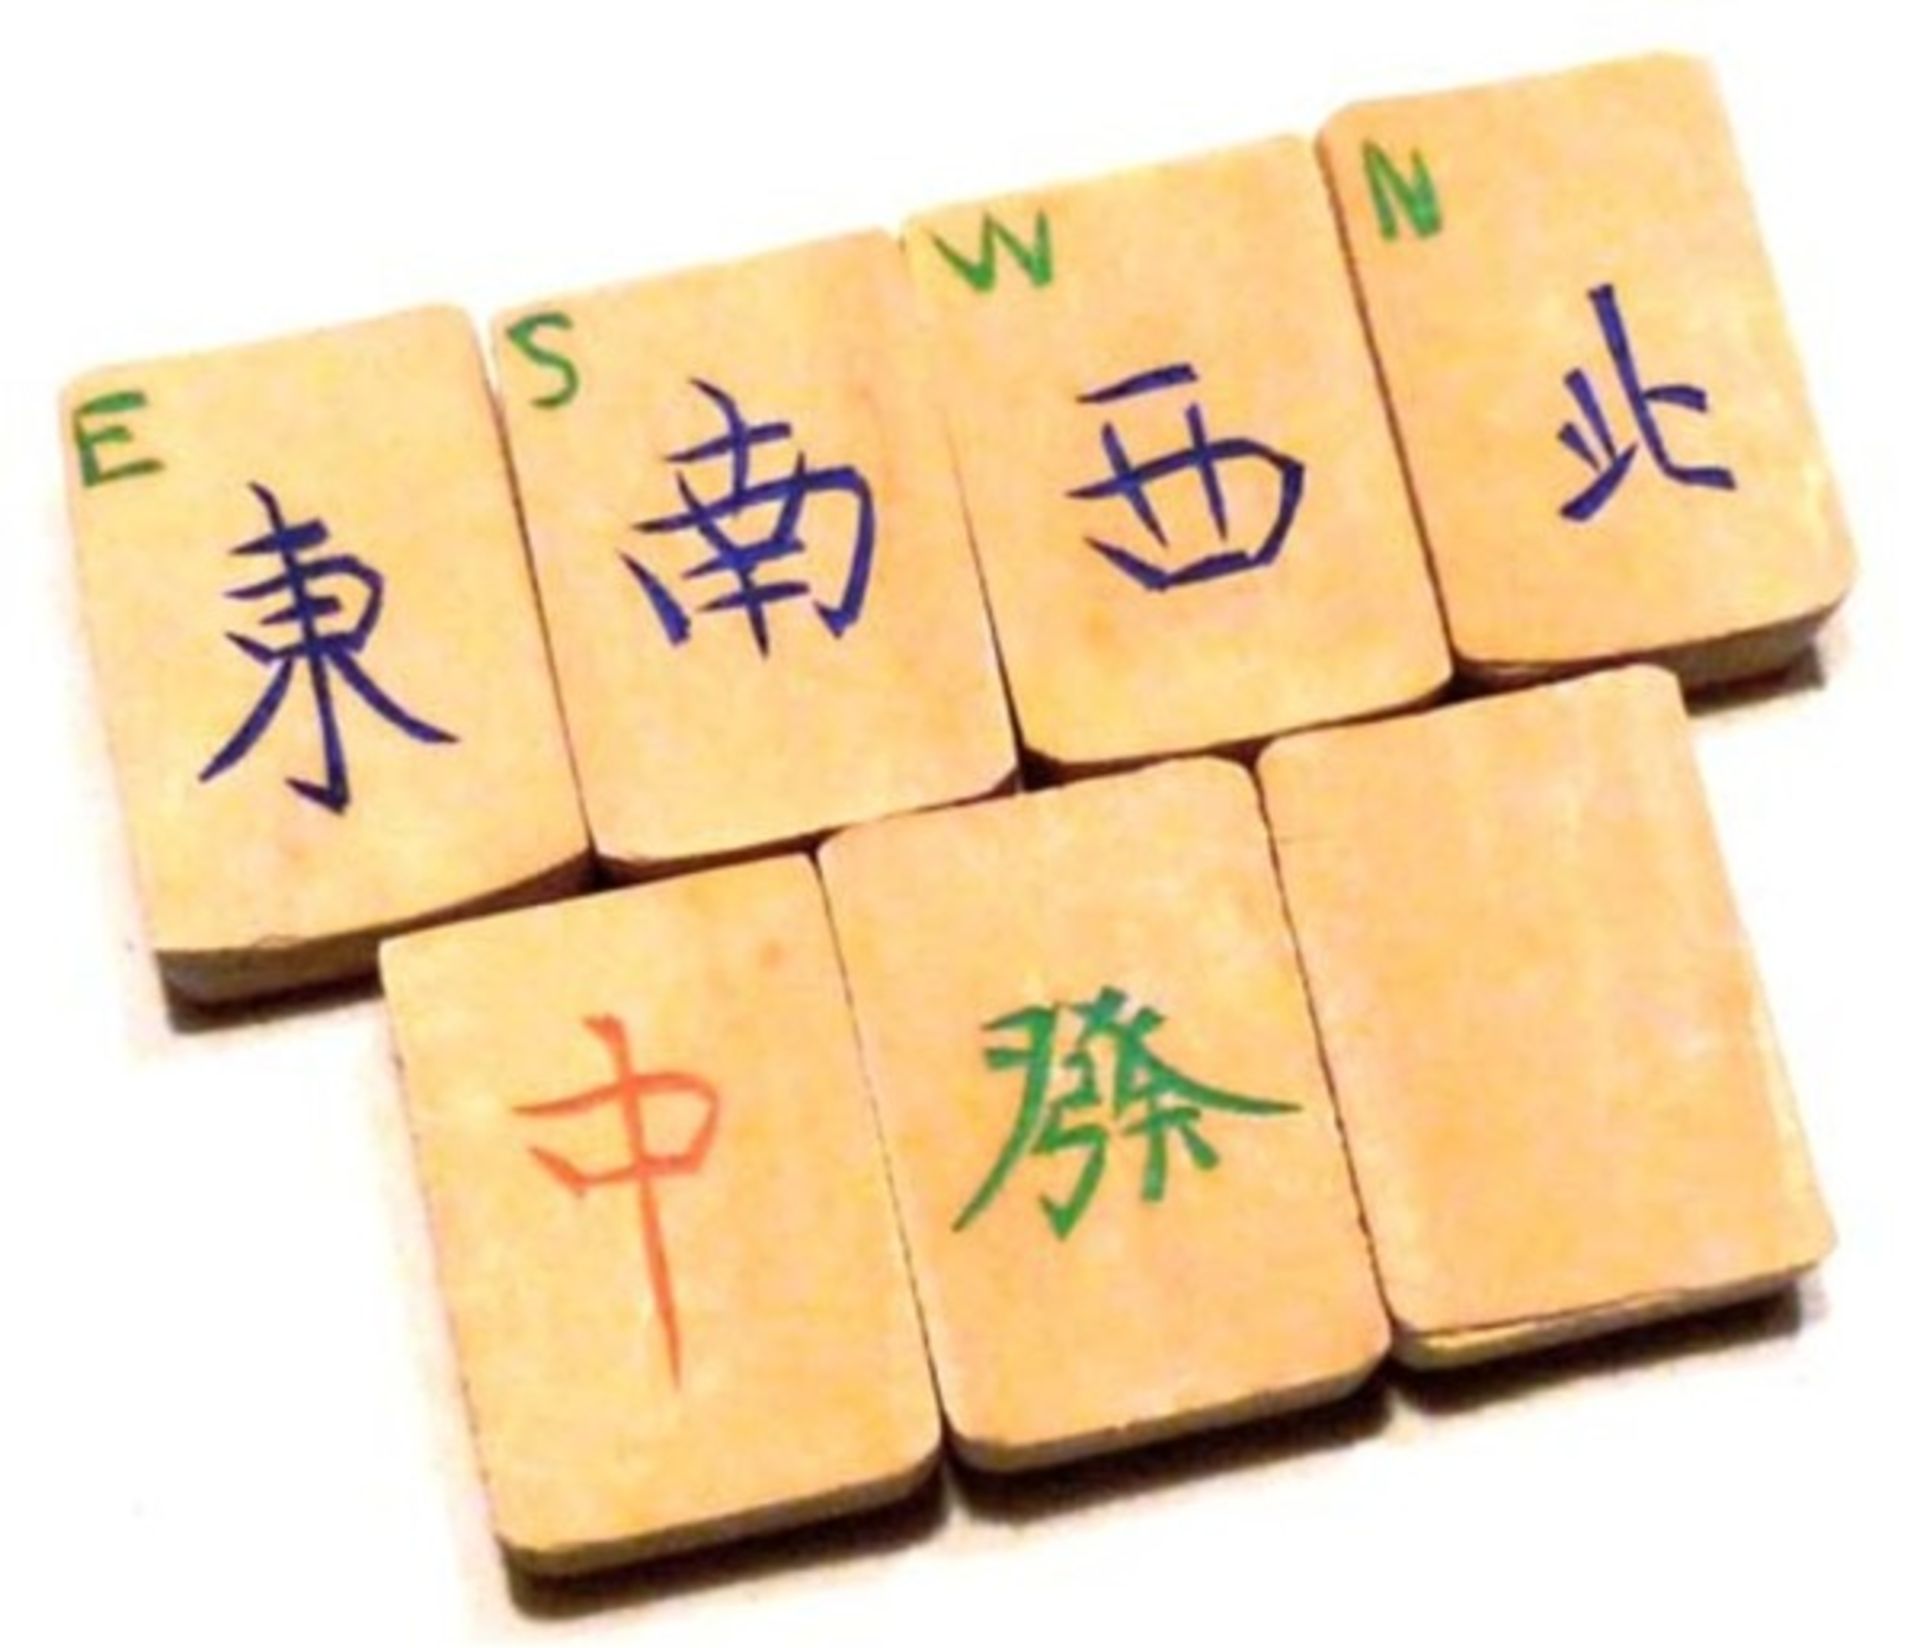 (Mahjong) Mahjong bamboe, schuifdoos met Babcock-karakters, ca. 1924 - Bild 6 aus 8